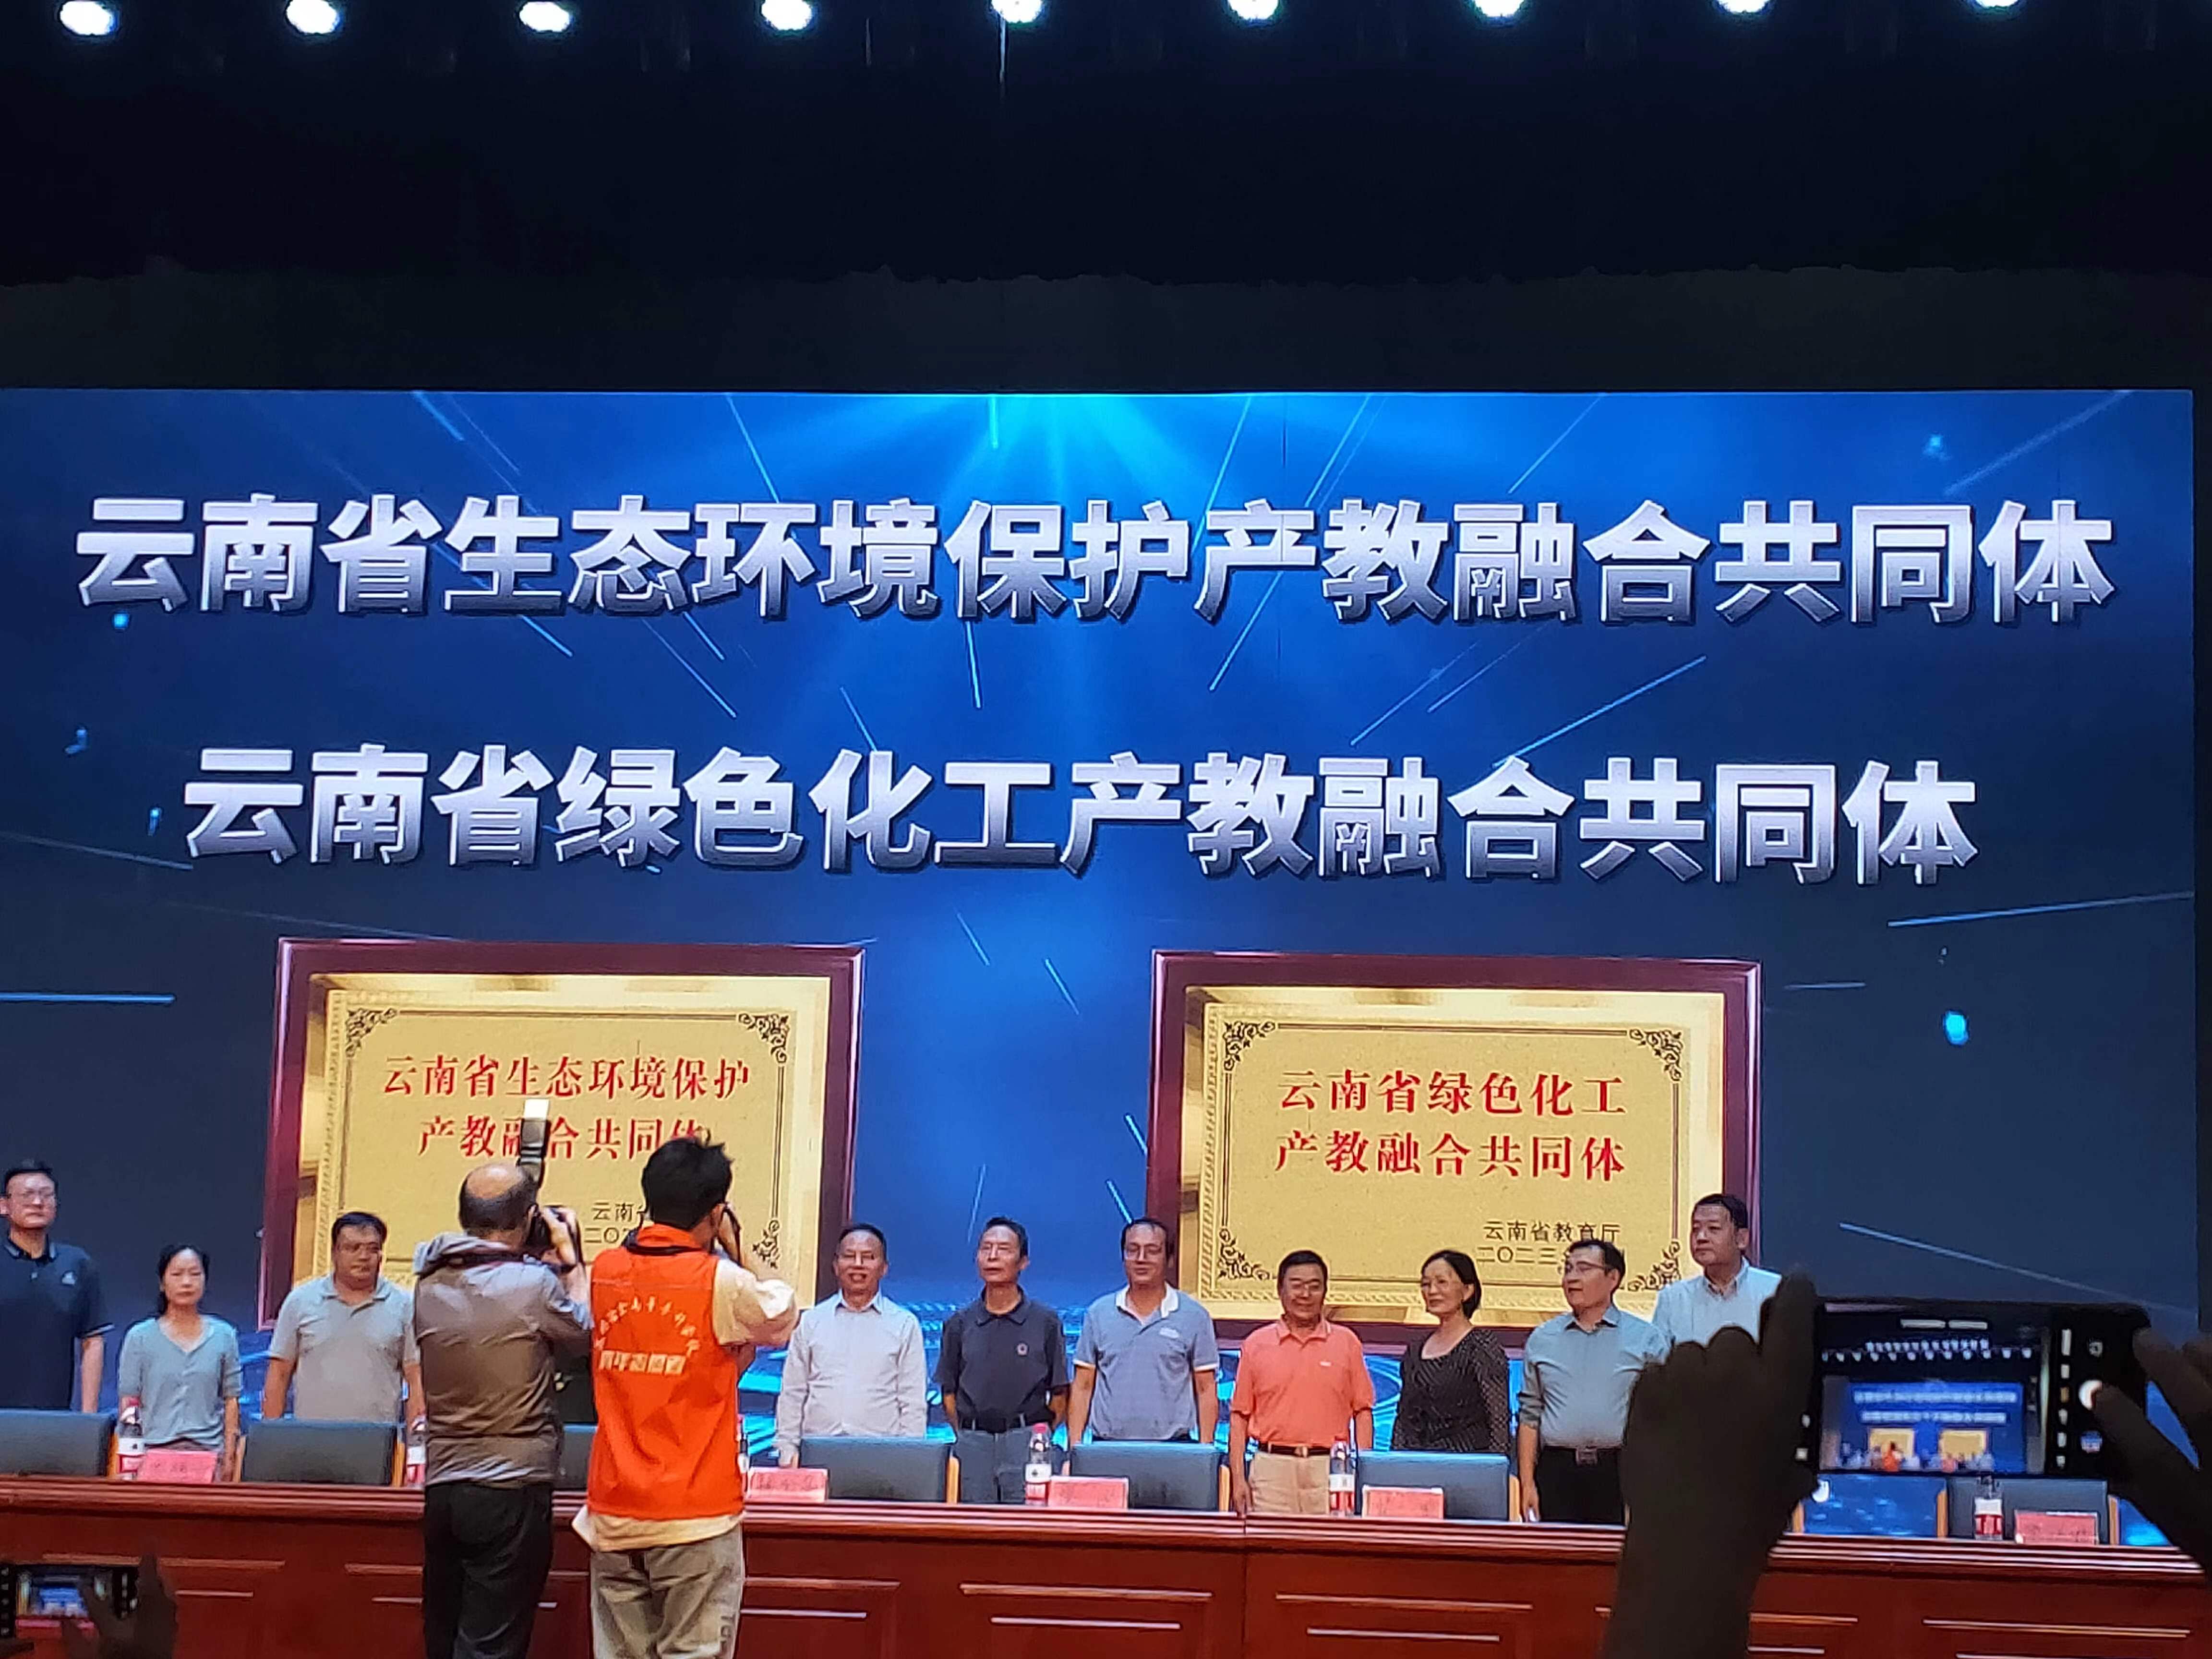 云南省生態環境保護、綠色化工產教融合體成立大會